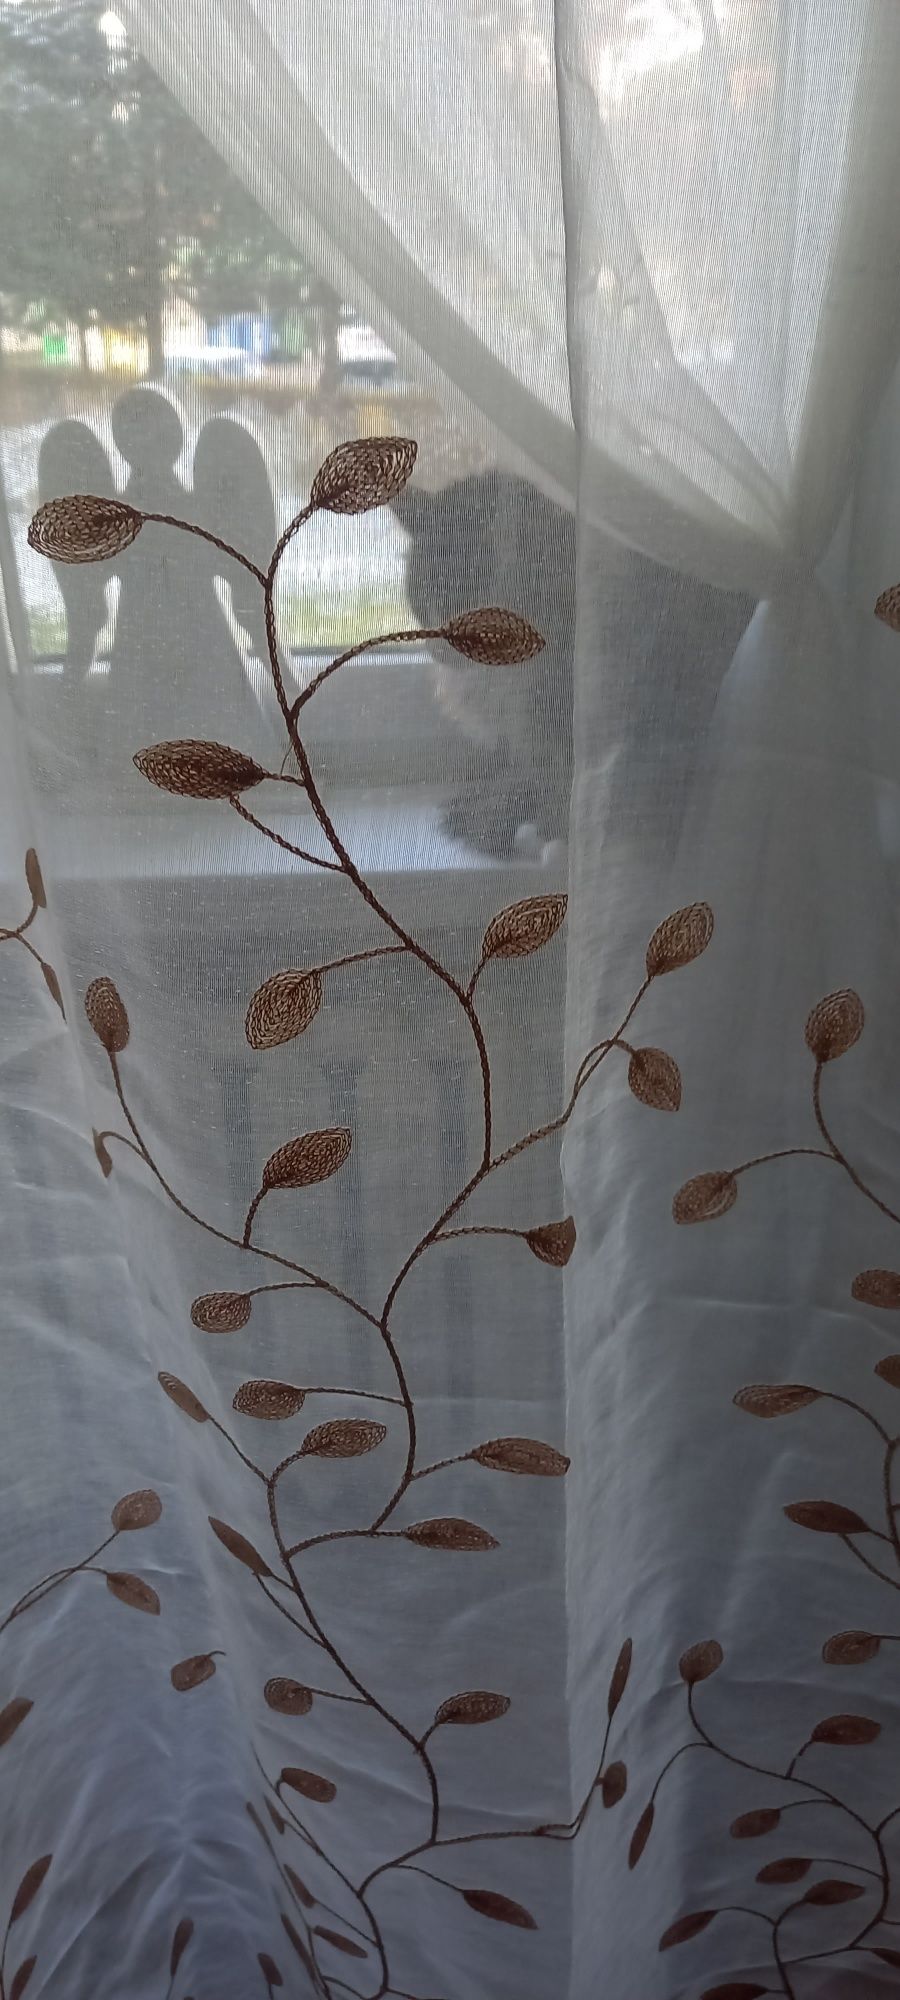 Zasłony firanki komplet przezroczyste haftowane liście 148 cm x 140 cm